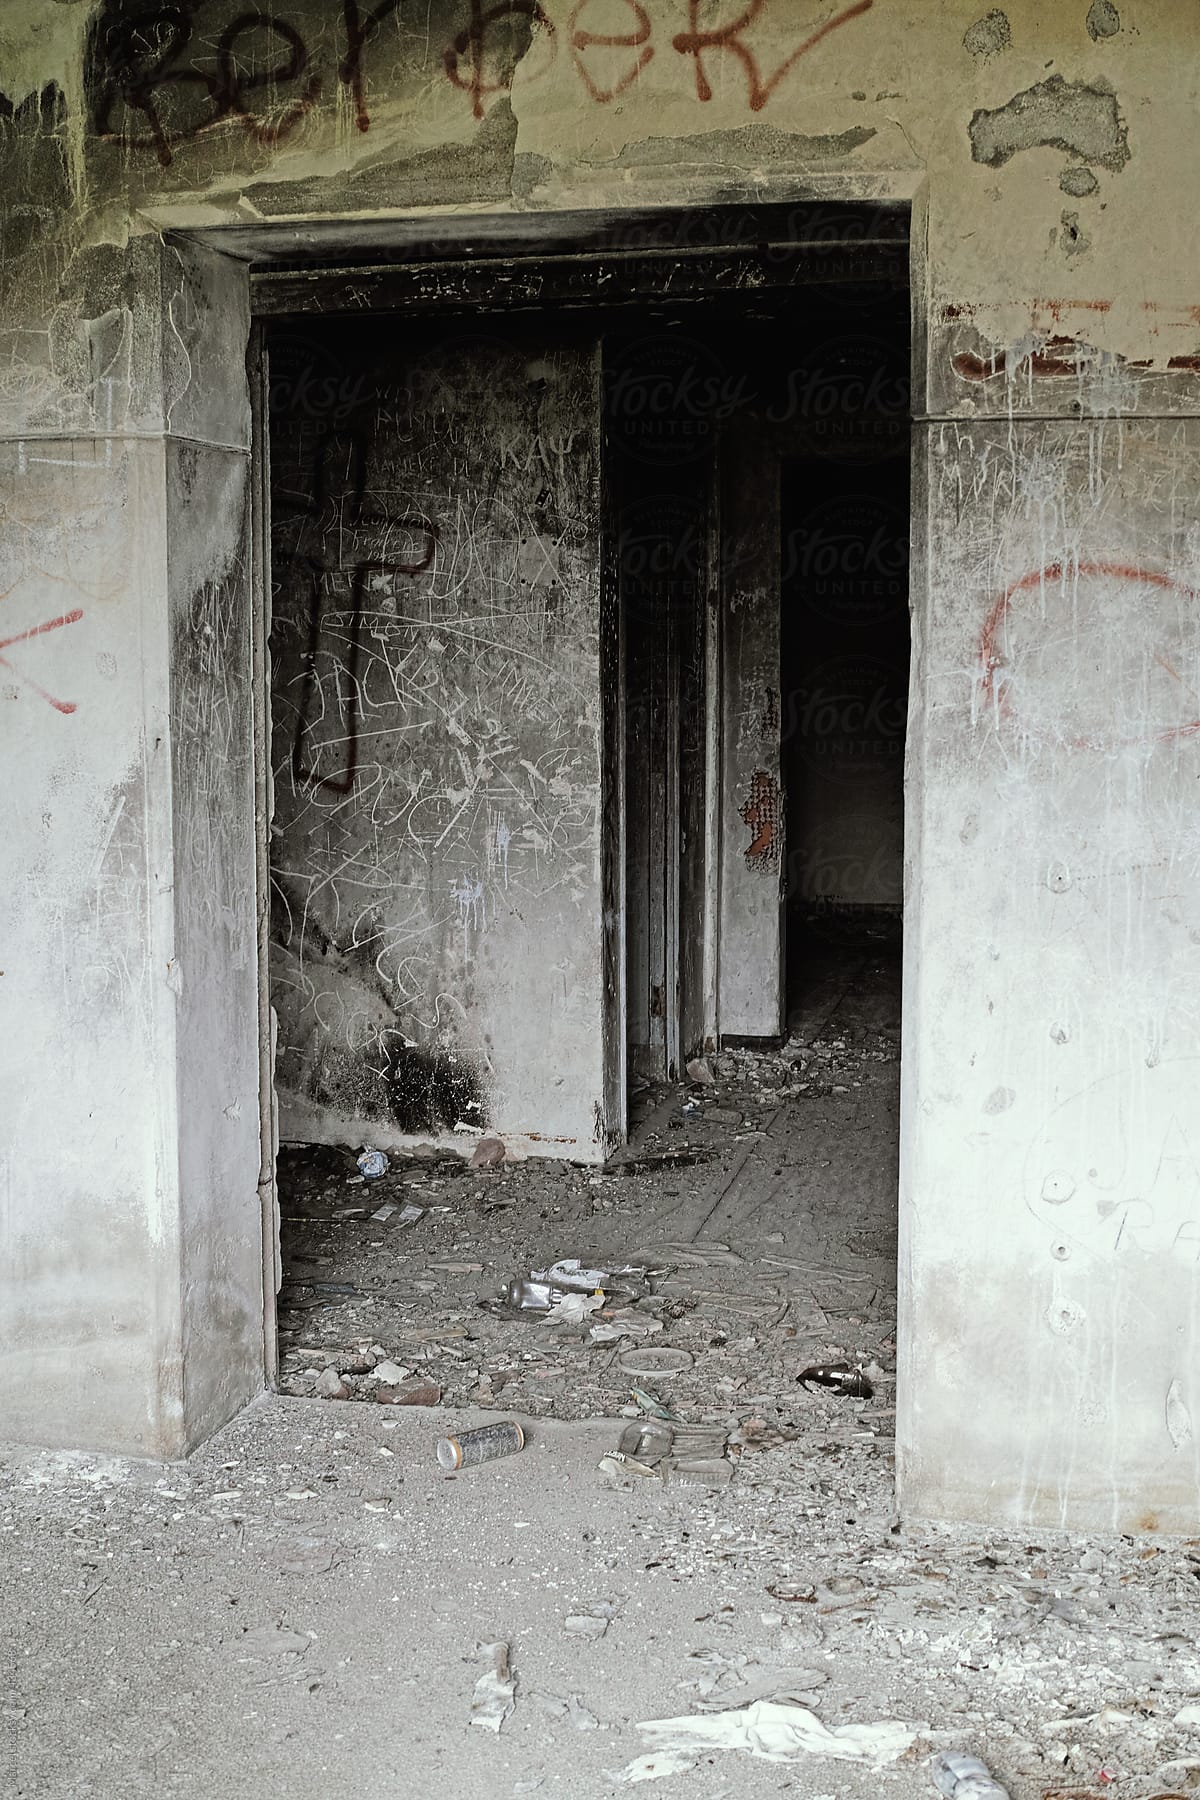 Inside a dirty old WW2 bunker